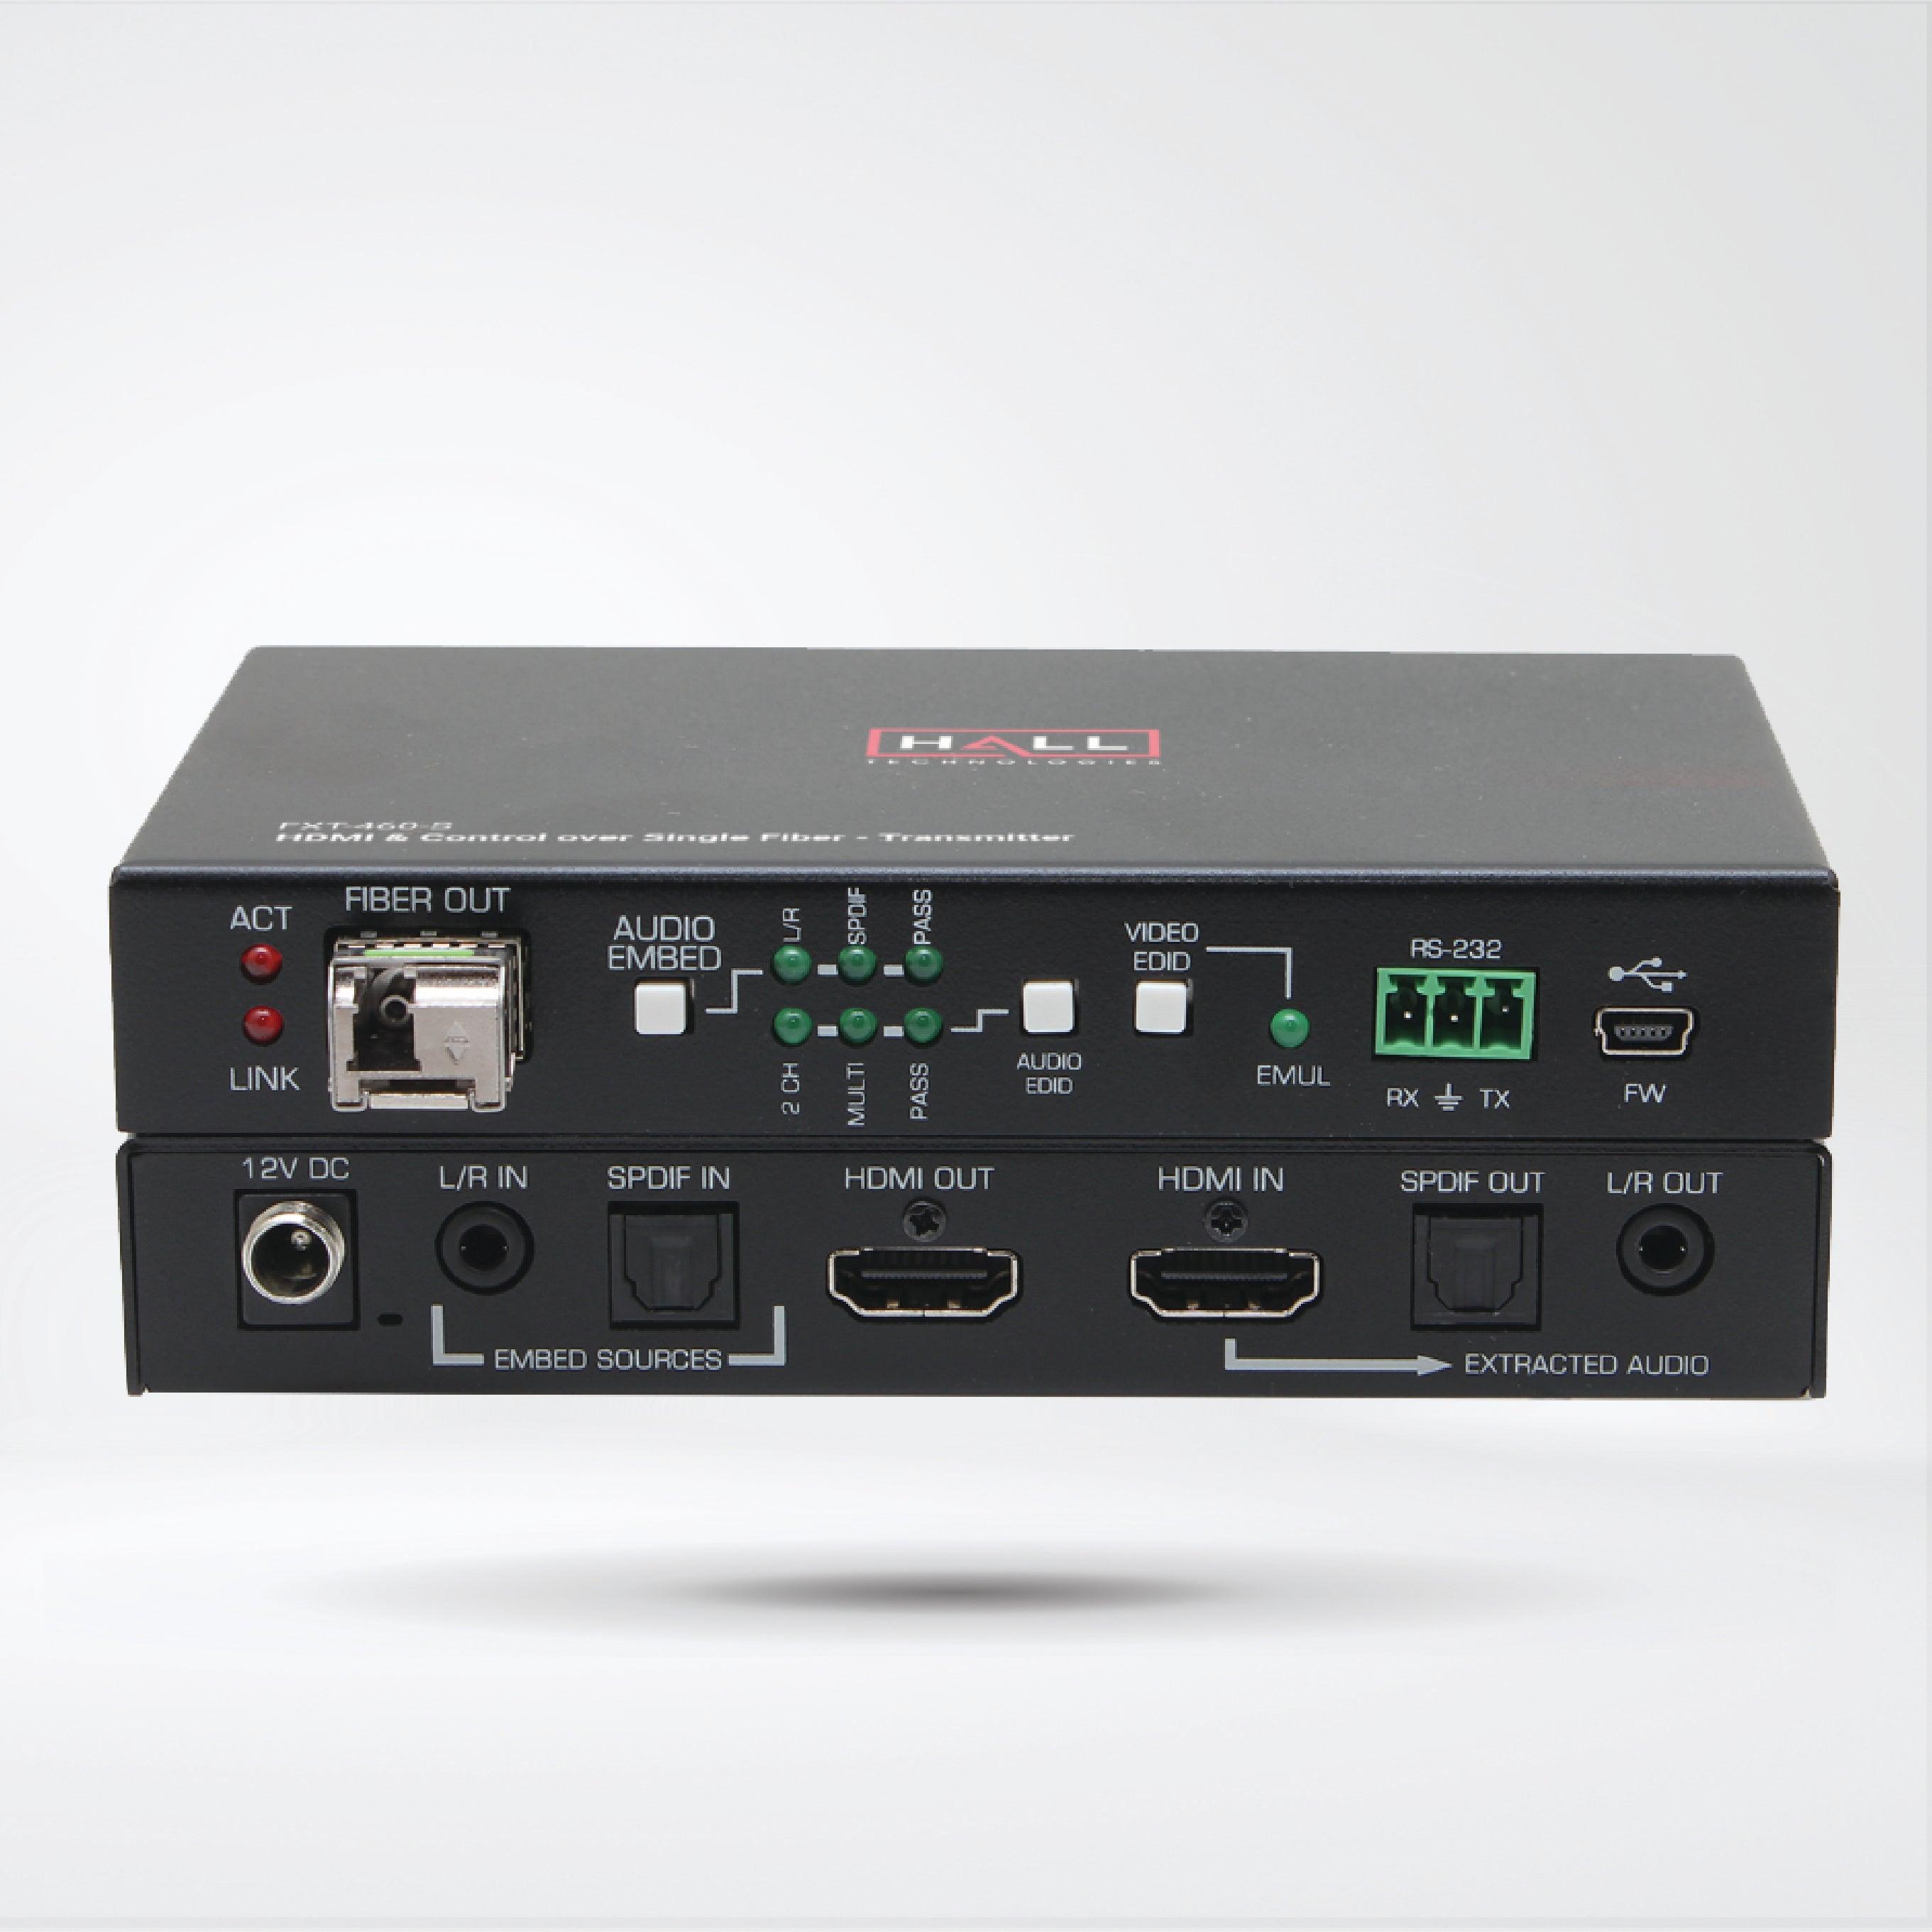 FXT-460-S 4K HDMI 2.0 Fiber Optic Extender - Riverplus